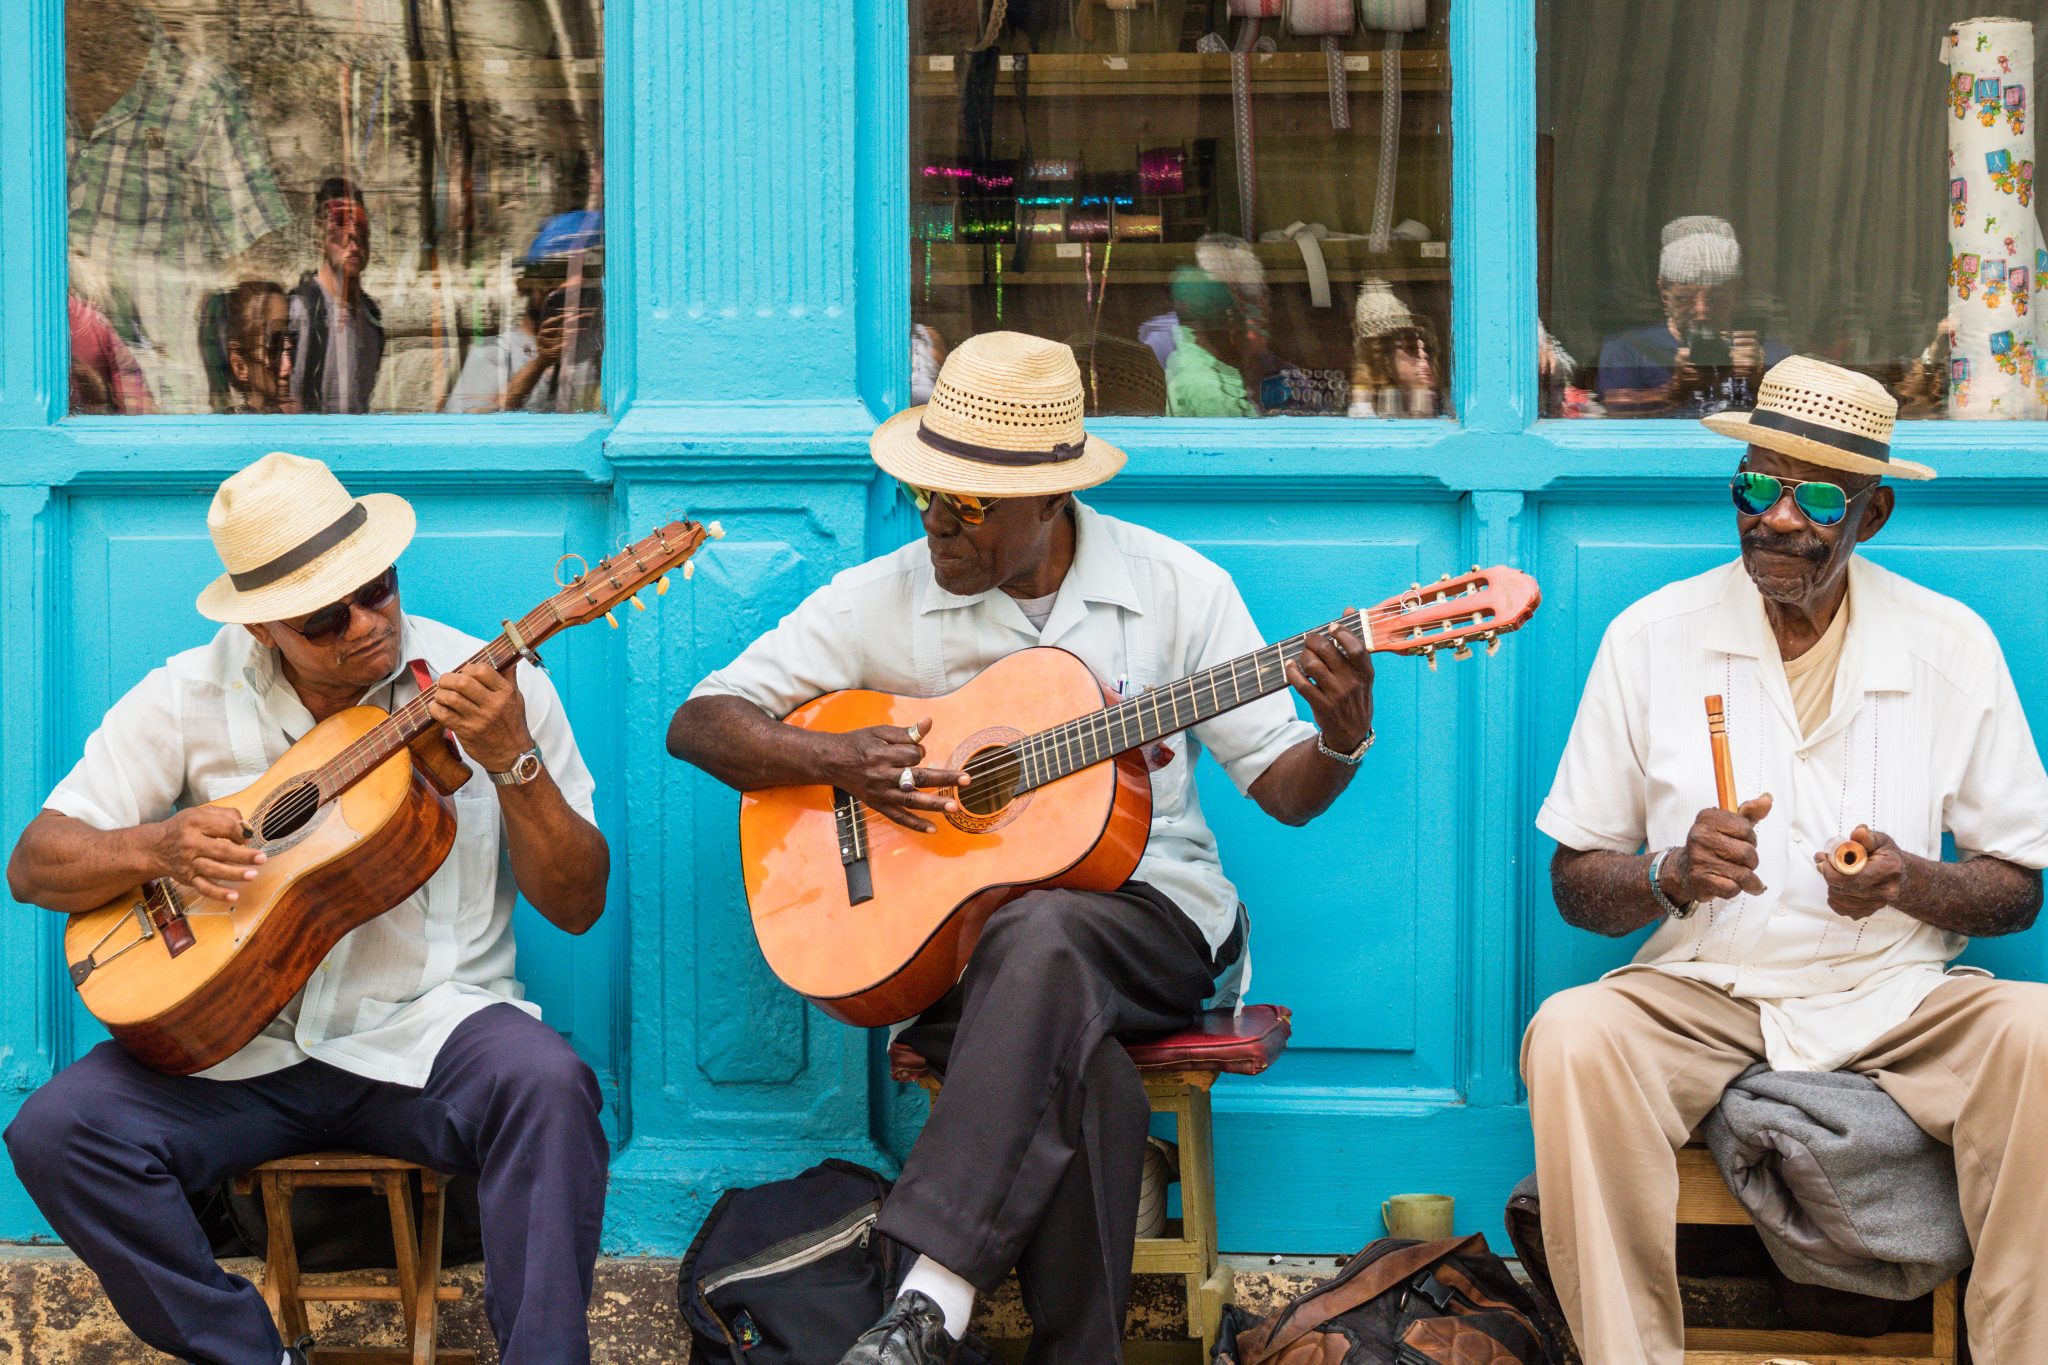 5 Ways to Meet Locals in Cuba